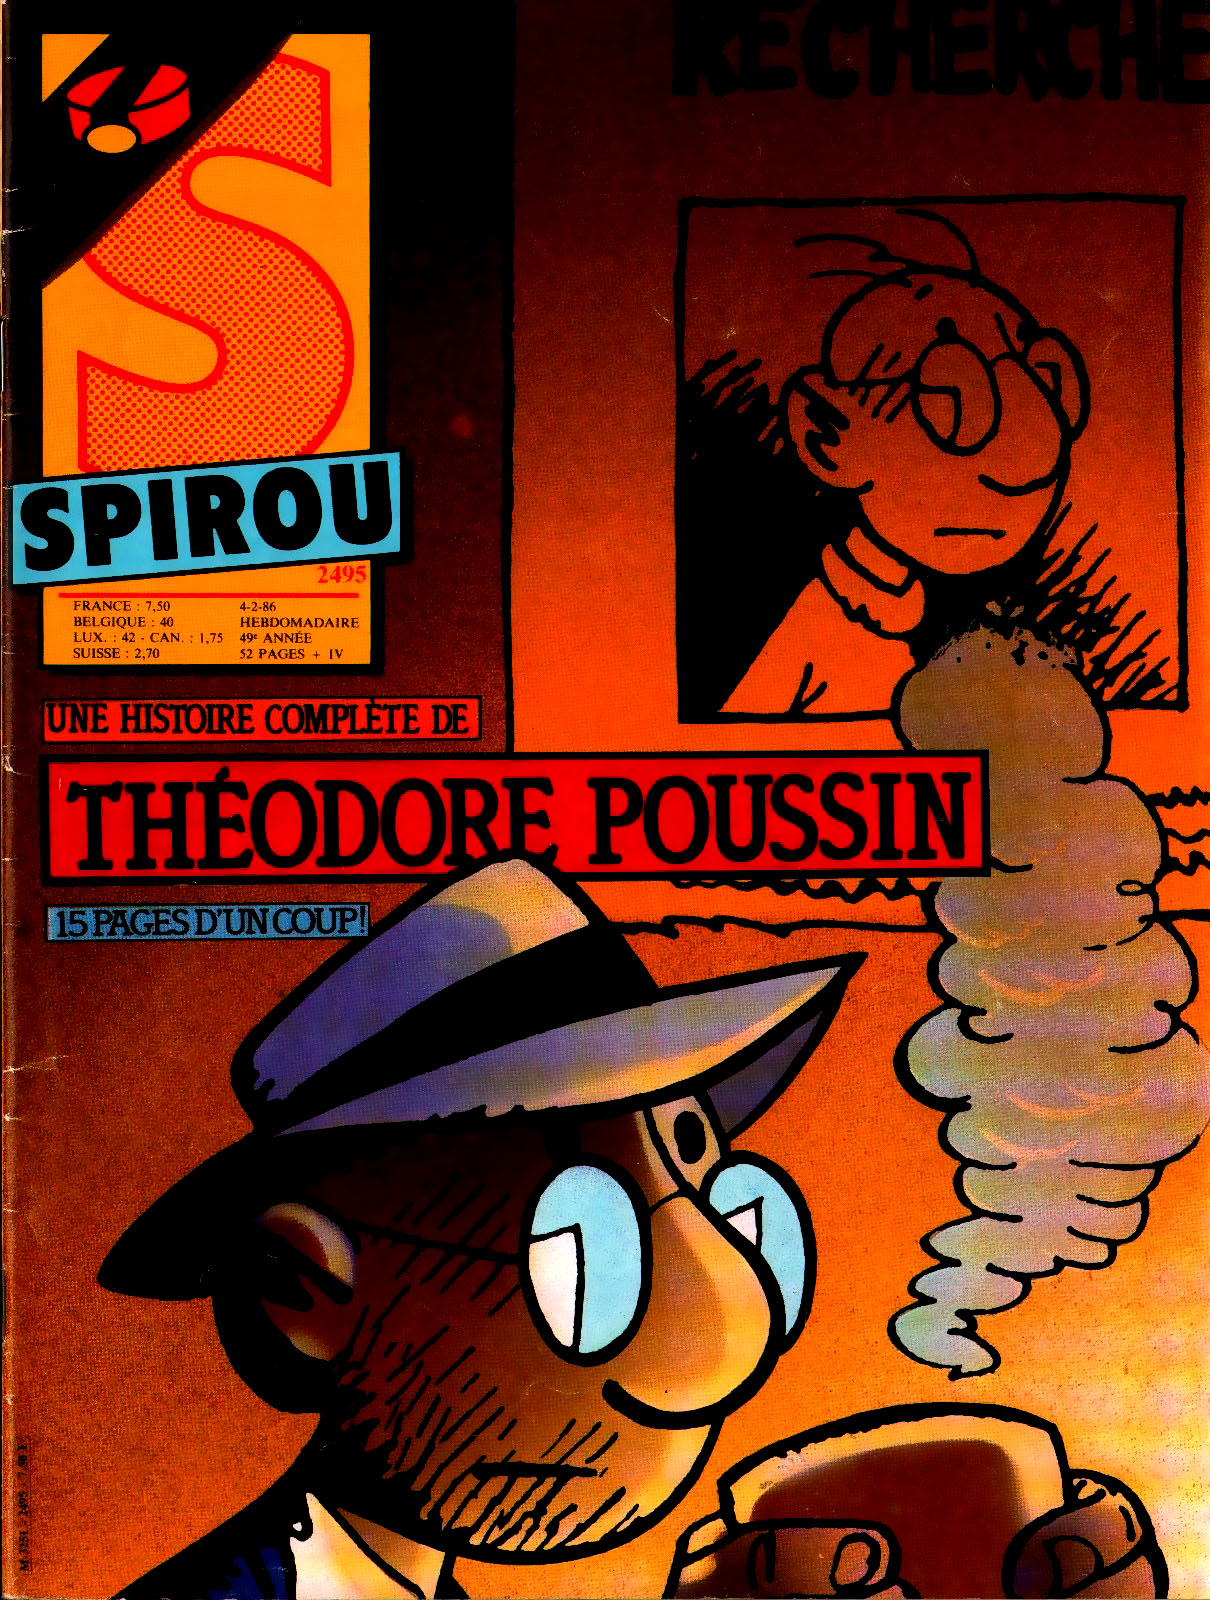 Spirou N 2495 du 4 fvrier 1986